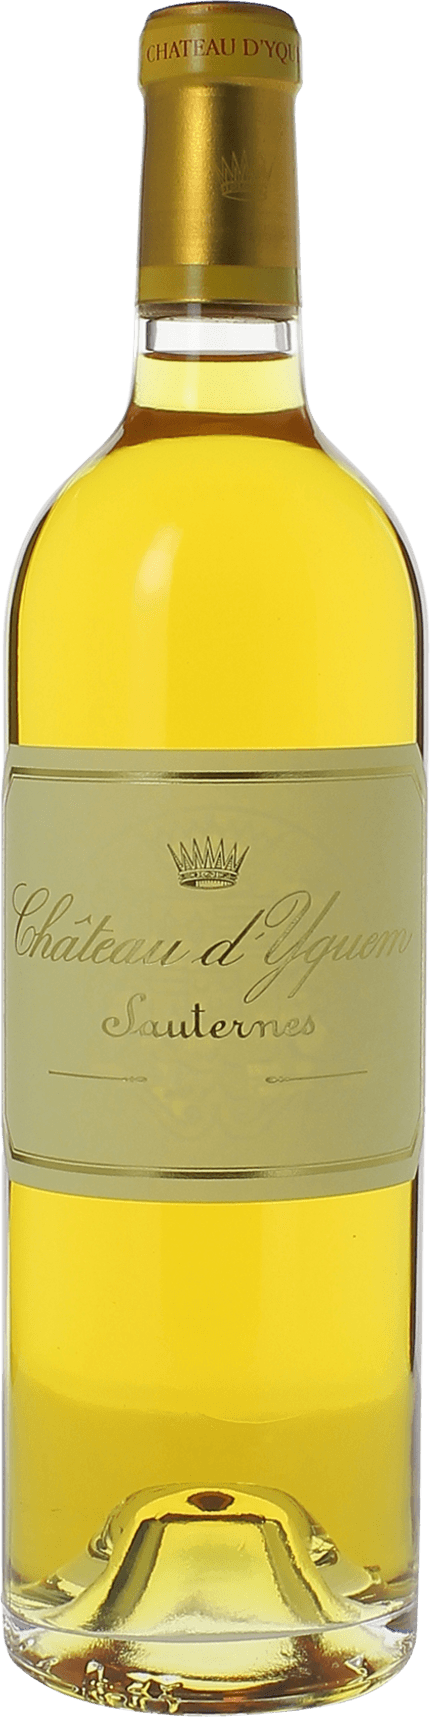 Yquem (disponible dbut avril) 1943 1er Grand cru class Sauternes, Bordeaux blanc